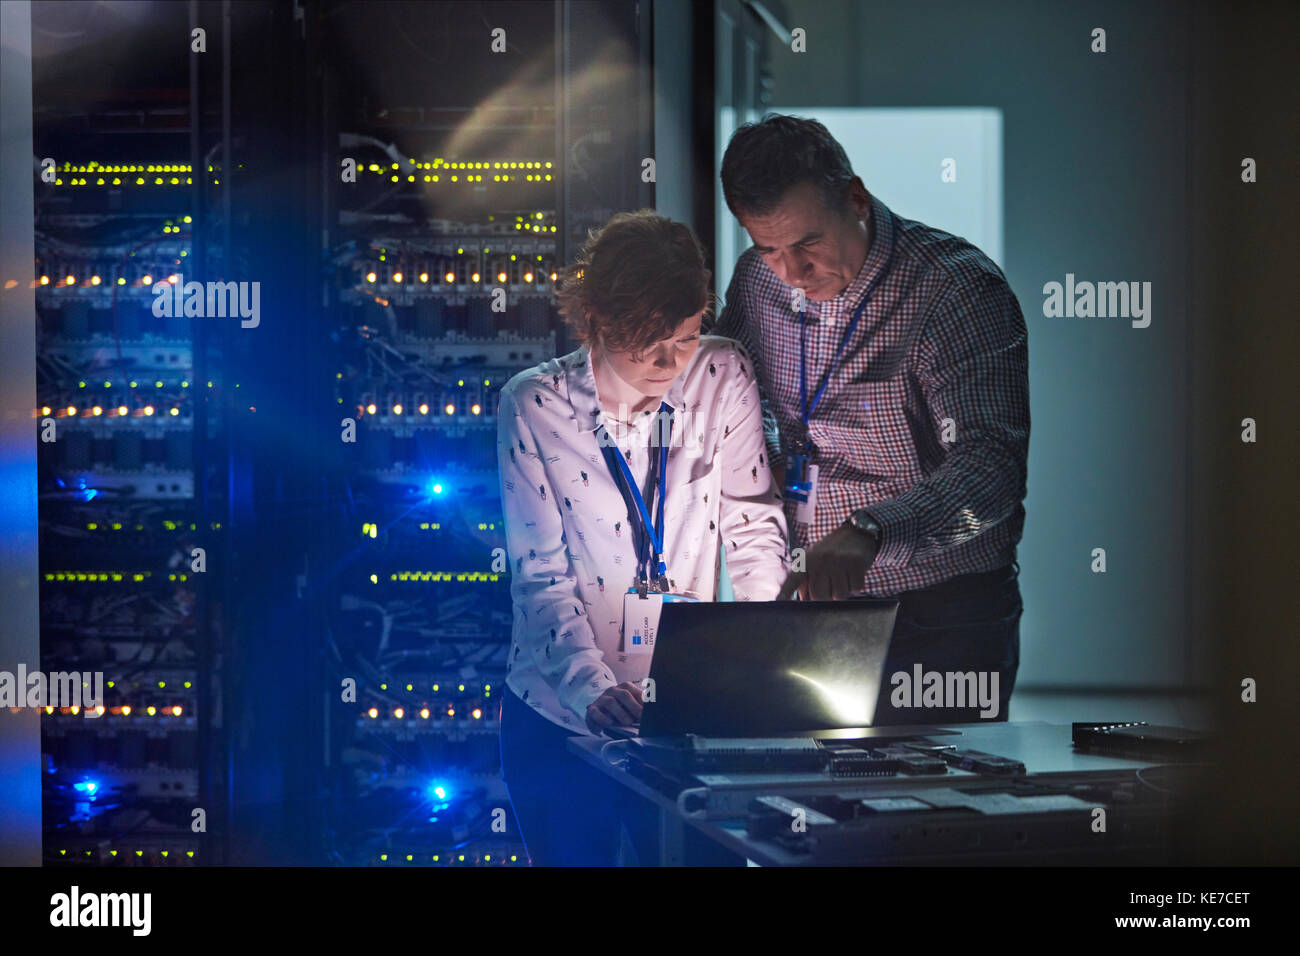 Tecnici IT che lavorano su un computer portatile in una sala server buia Foto Stock